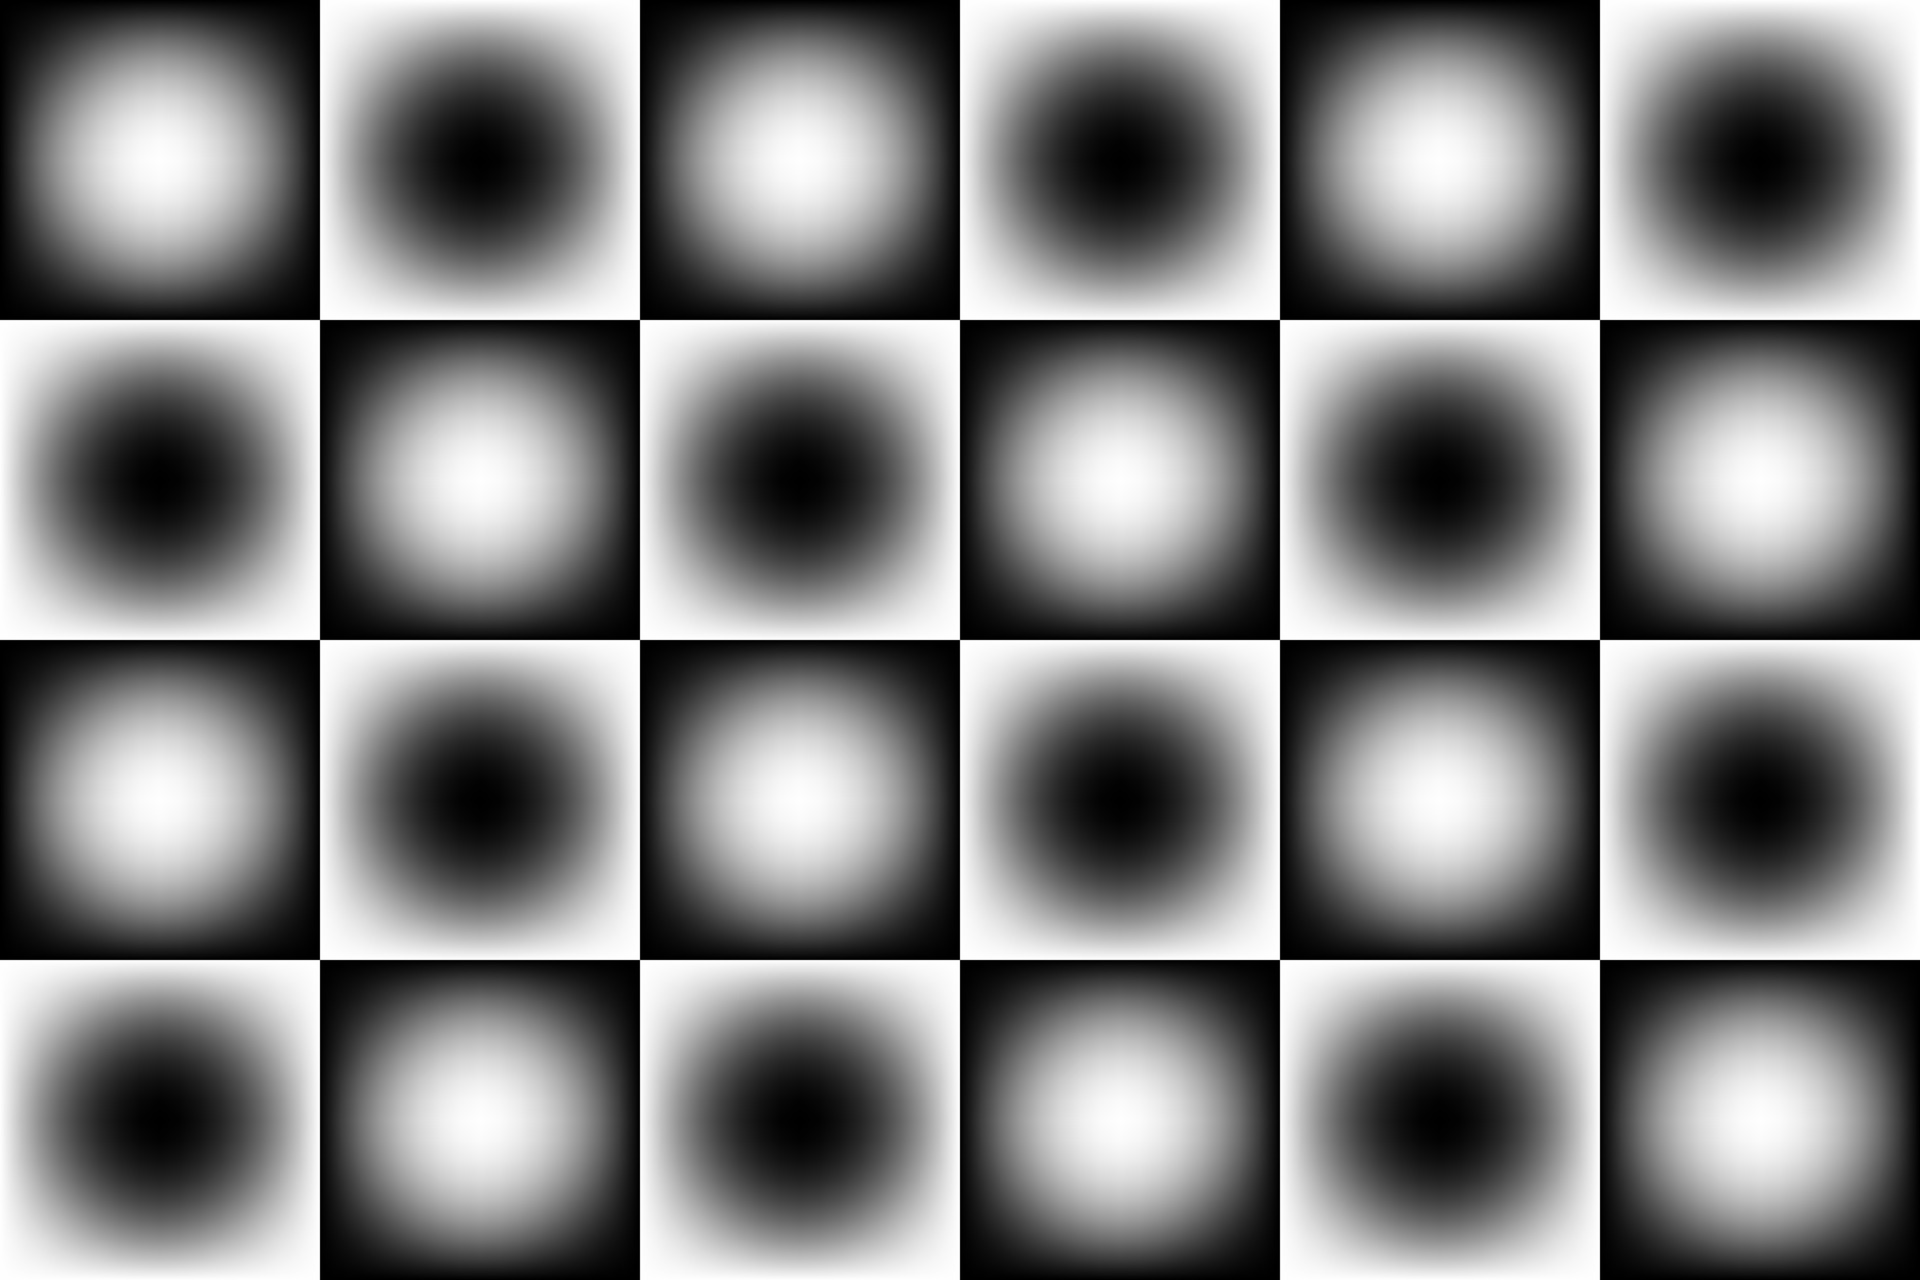 fundo quadrado preto e branco do tabuleiro de xadrez oficial - vetor  6644516 Vetor no Vecteezy